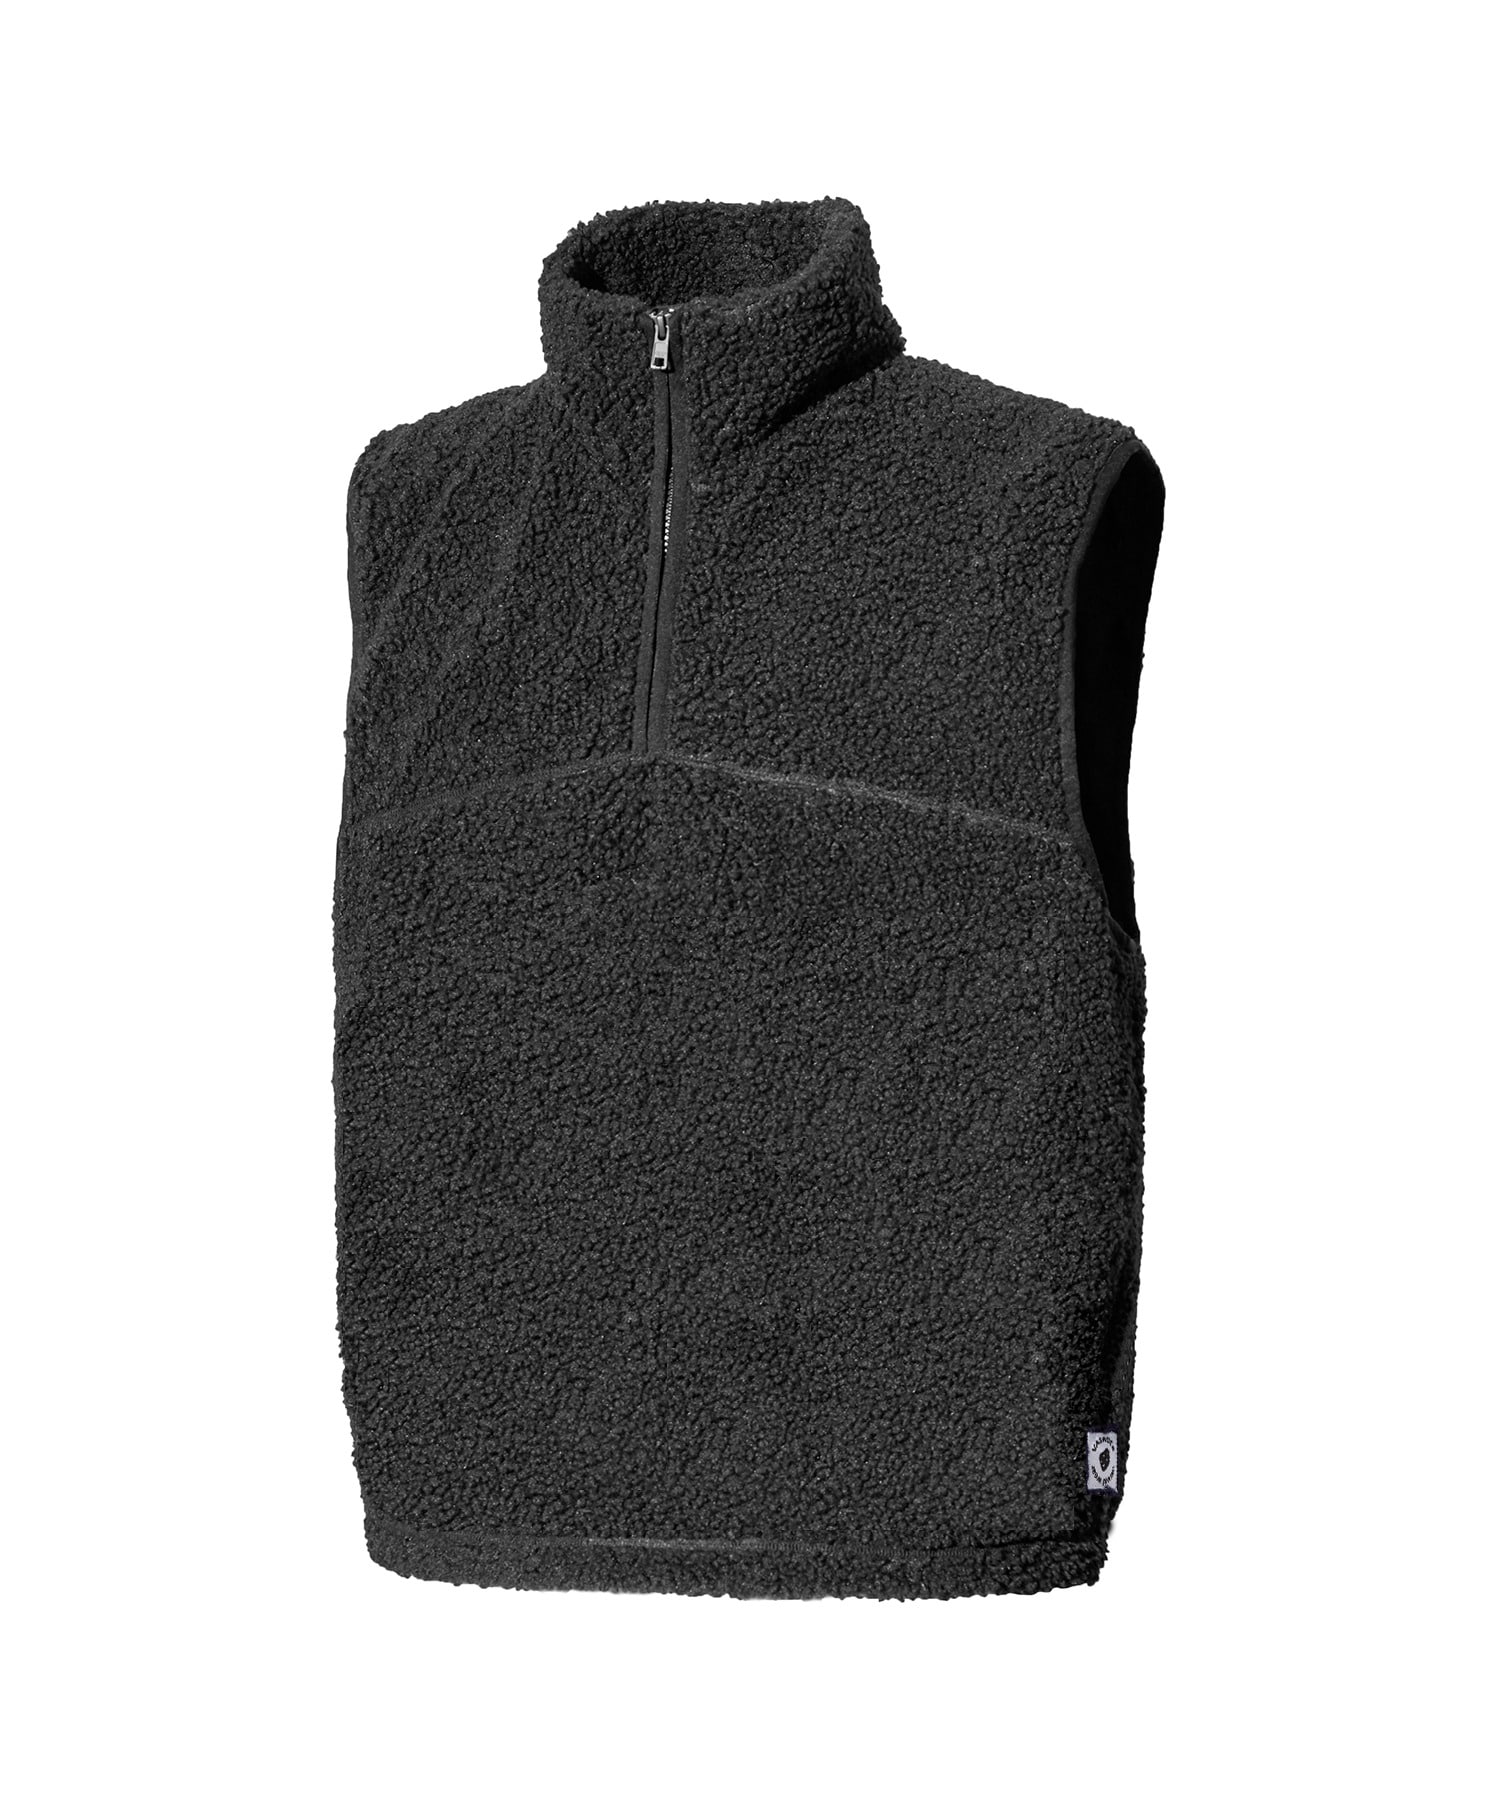 VASROCK,Bubble Fleece Anorak Half Zip-Up Vest Charcoal